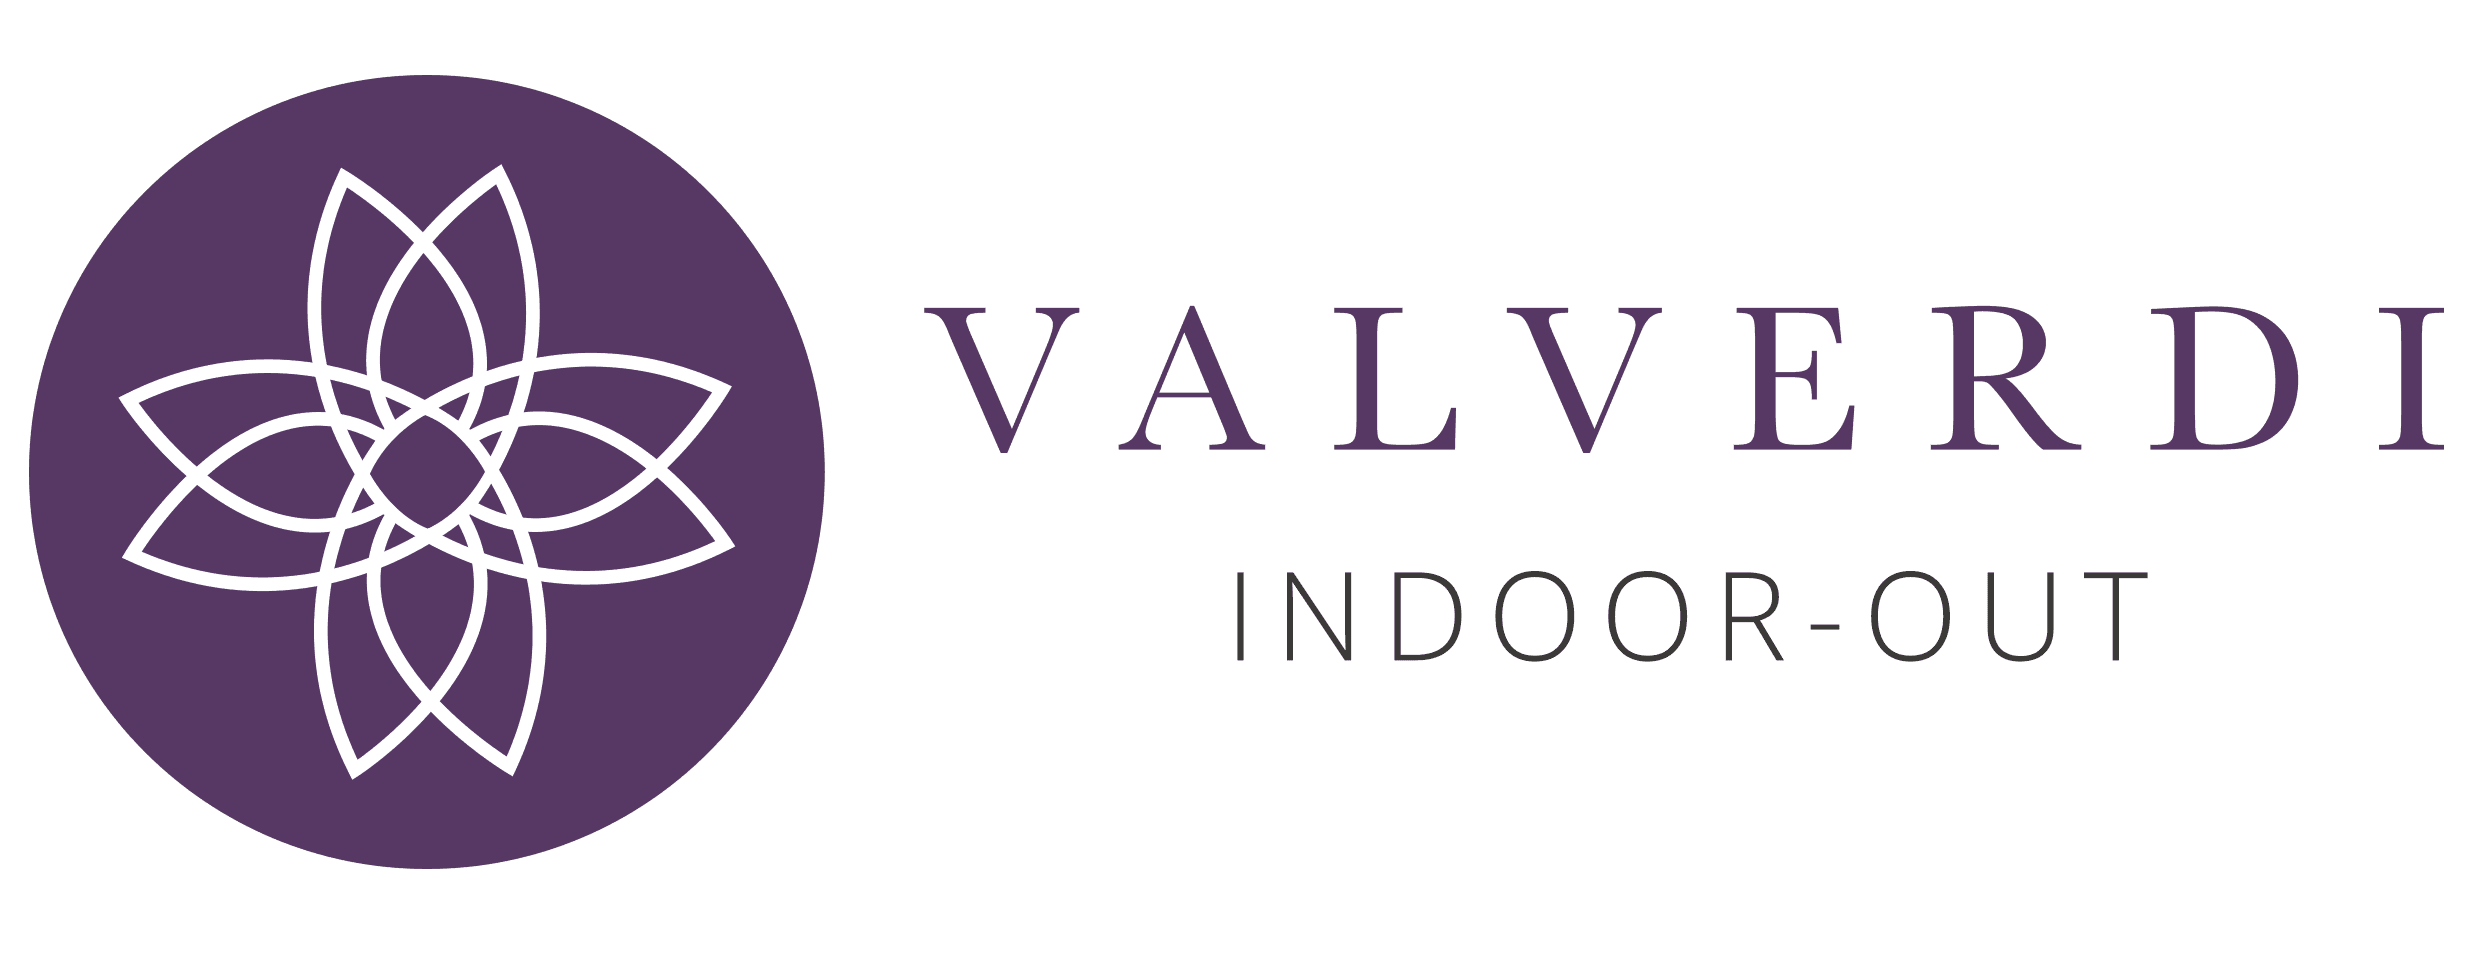 Valverdi logo